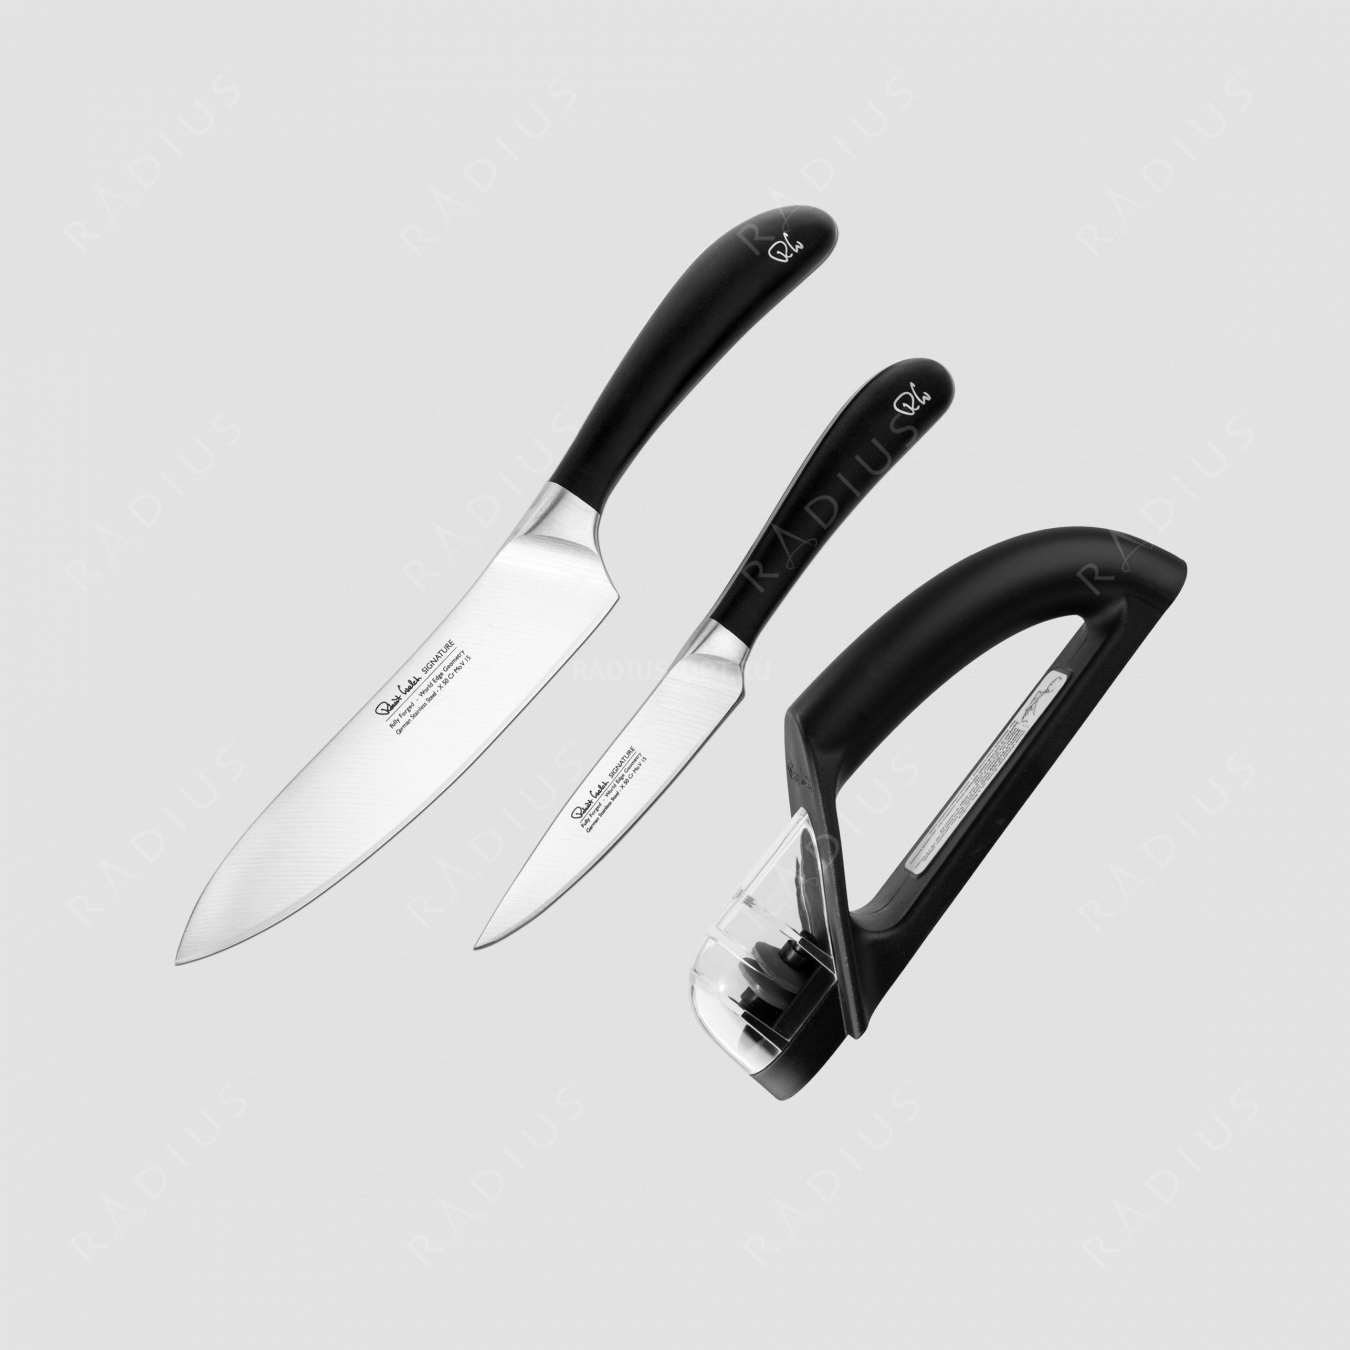 Набор кухонных ножей 2 штуки, точилка, серия Signature knife, ROBERT WELCH, Великобритания